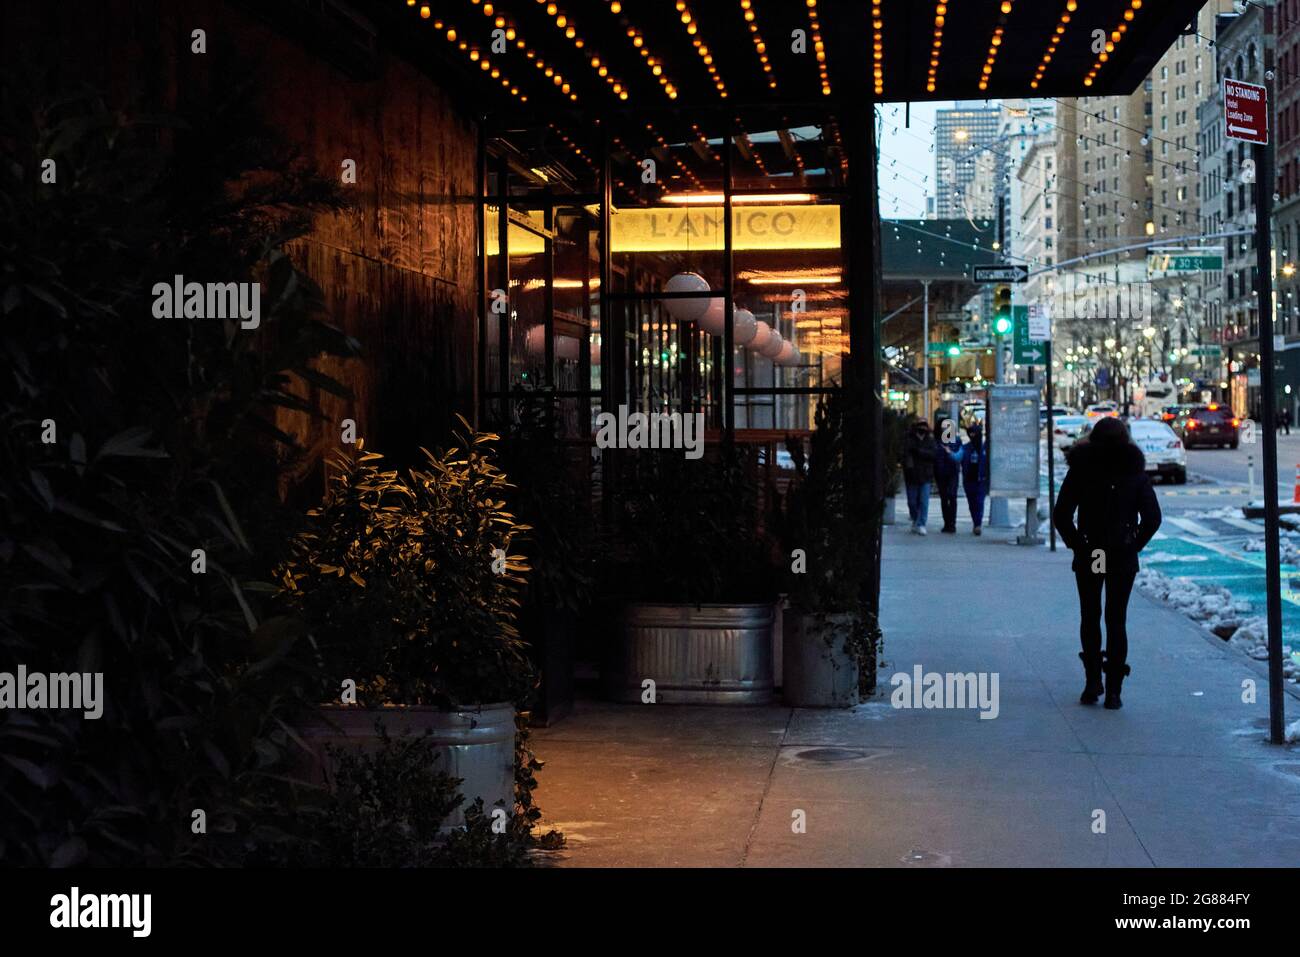 Fotografía de la calle de la ciudad de Nueva York, la gente, las calles y el medio ambiente Foto de stock